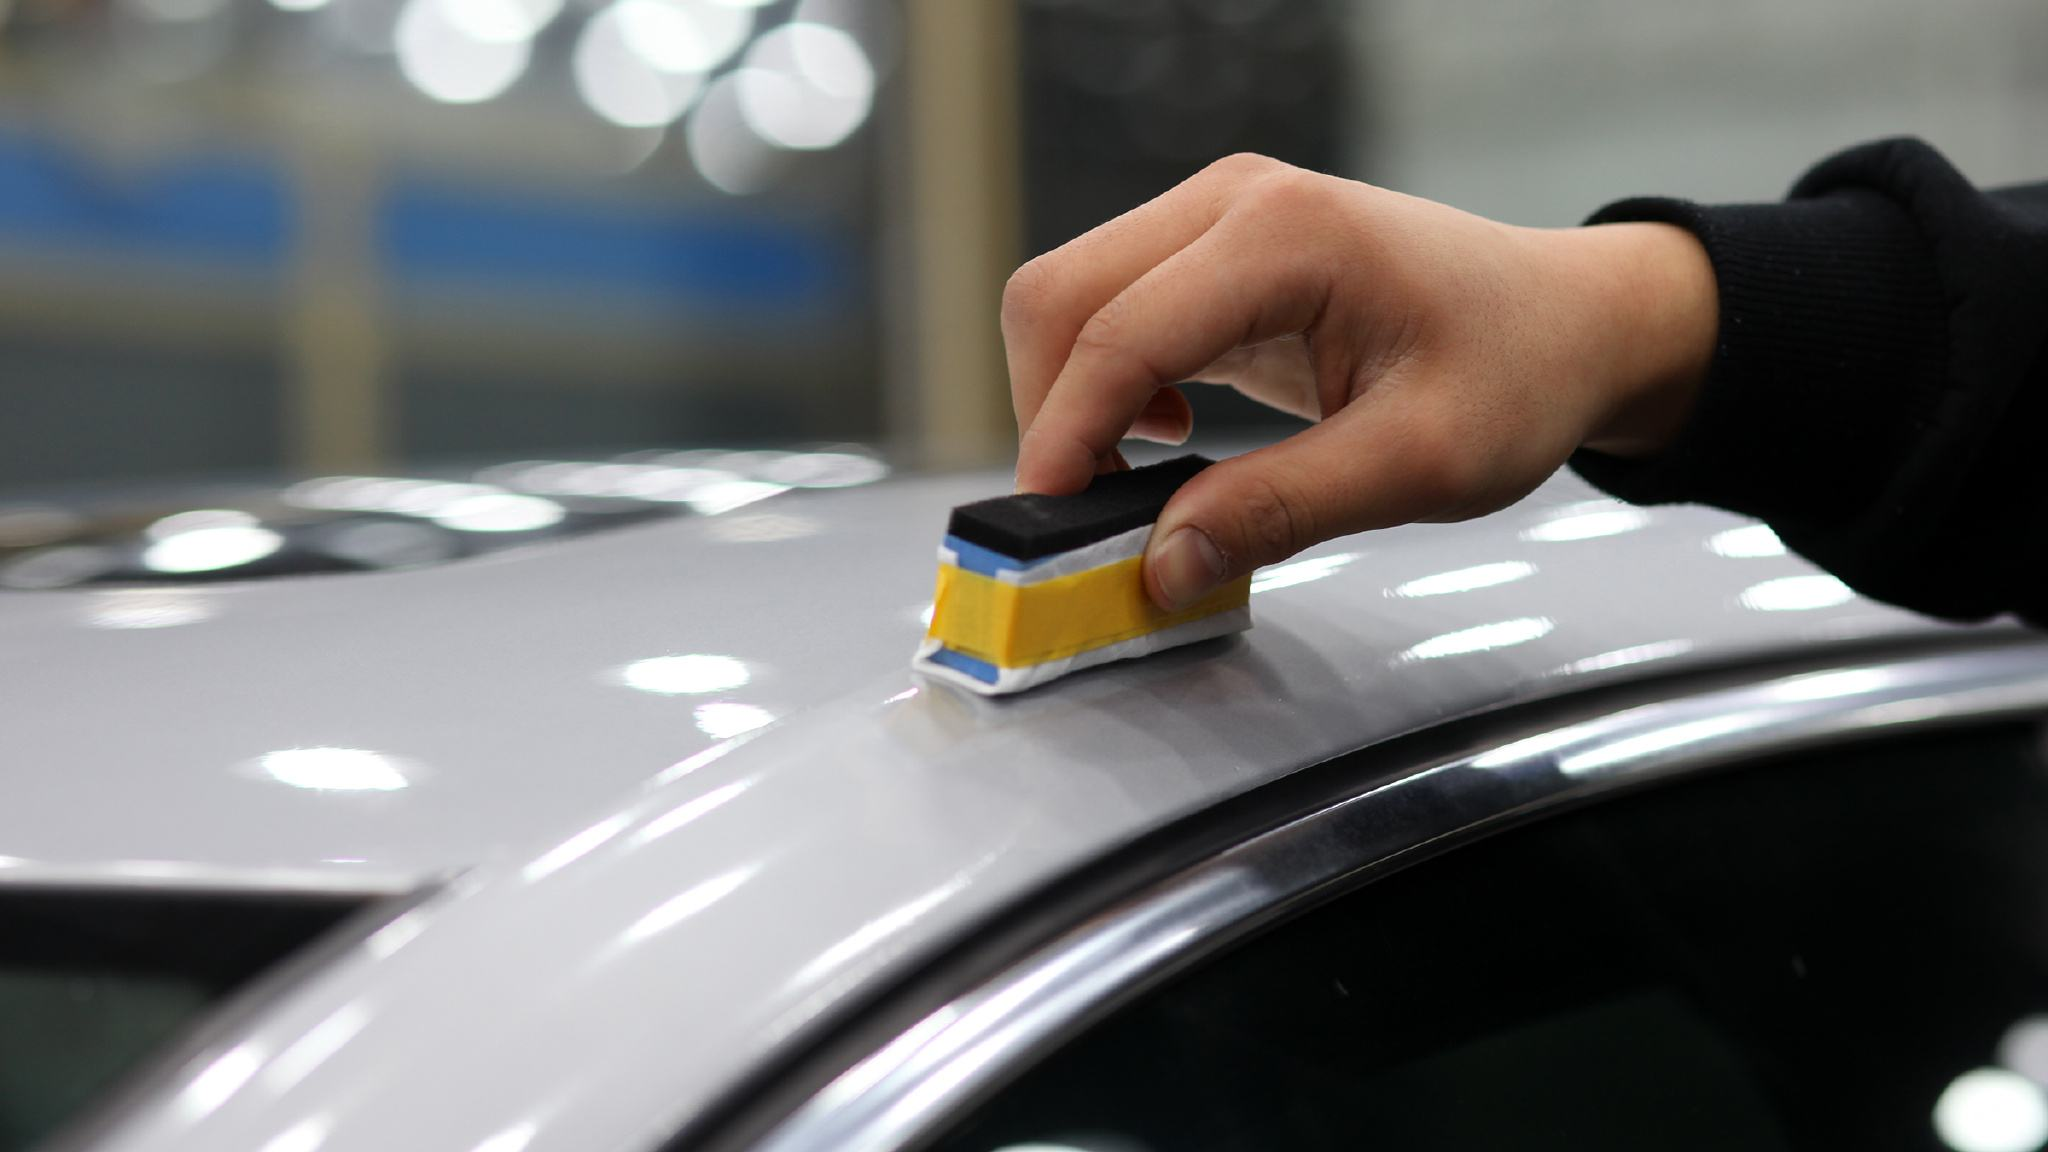 使用车用镀膜剂 提升爱车颜值保护车漆 - 知乎